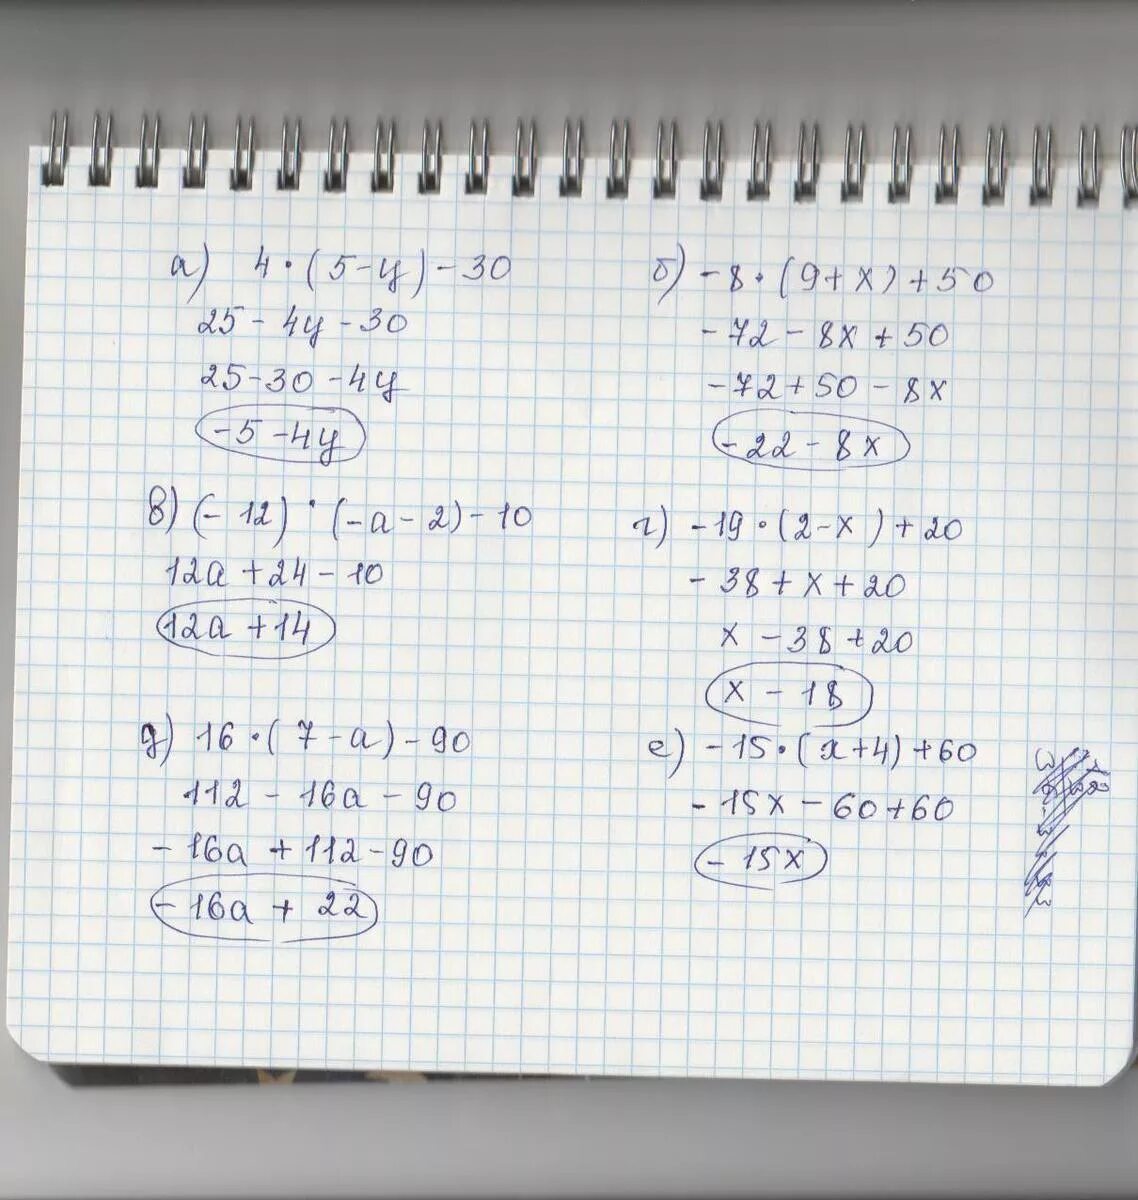 45 3 5 решение. 20-3(Х-5)<16-7х. 5/4-Х+5/Х=10/5. Решение 5х+12=60. 4нвк 60-12-19.